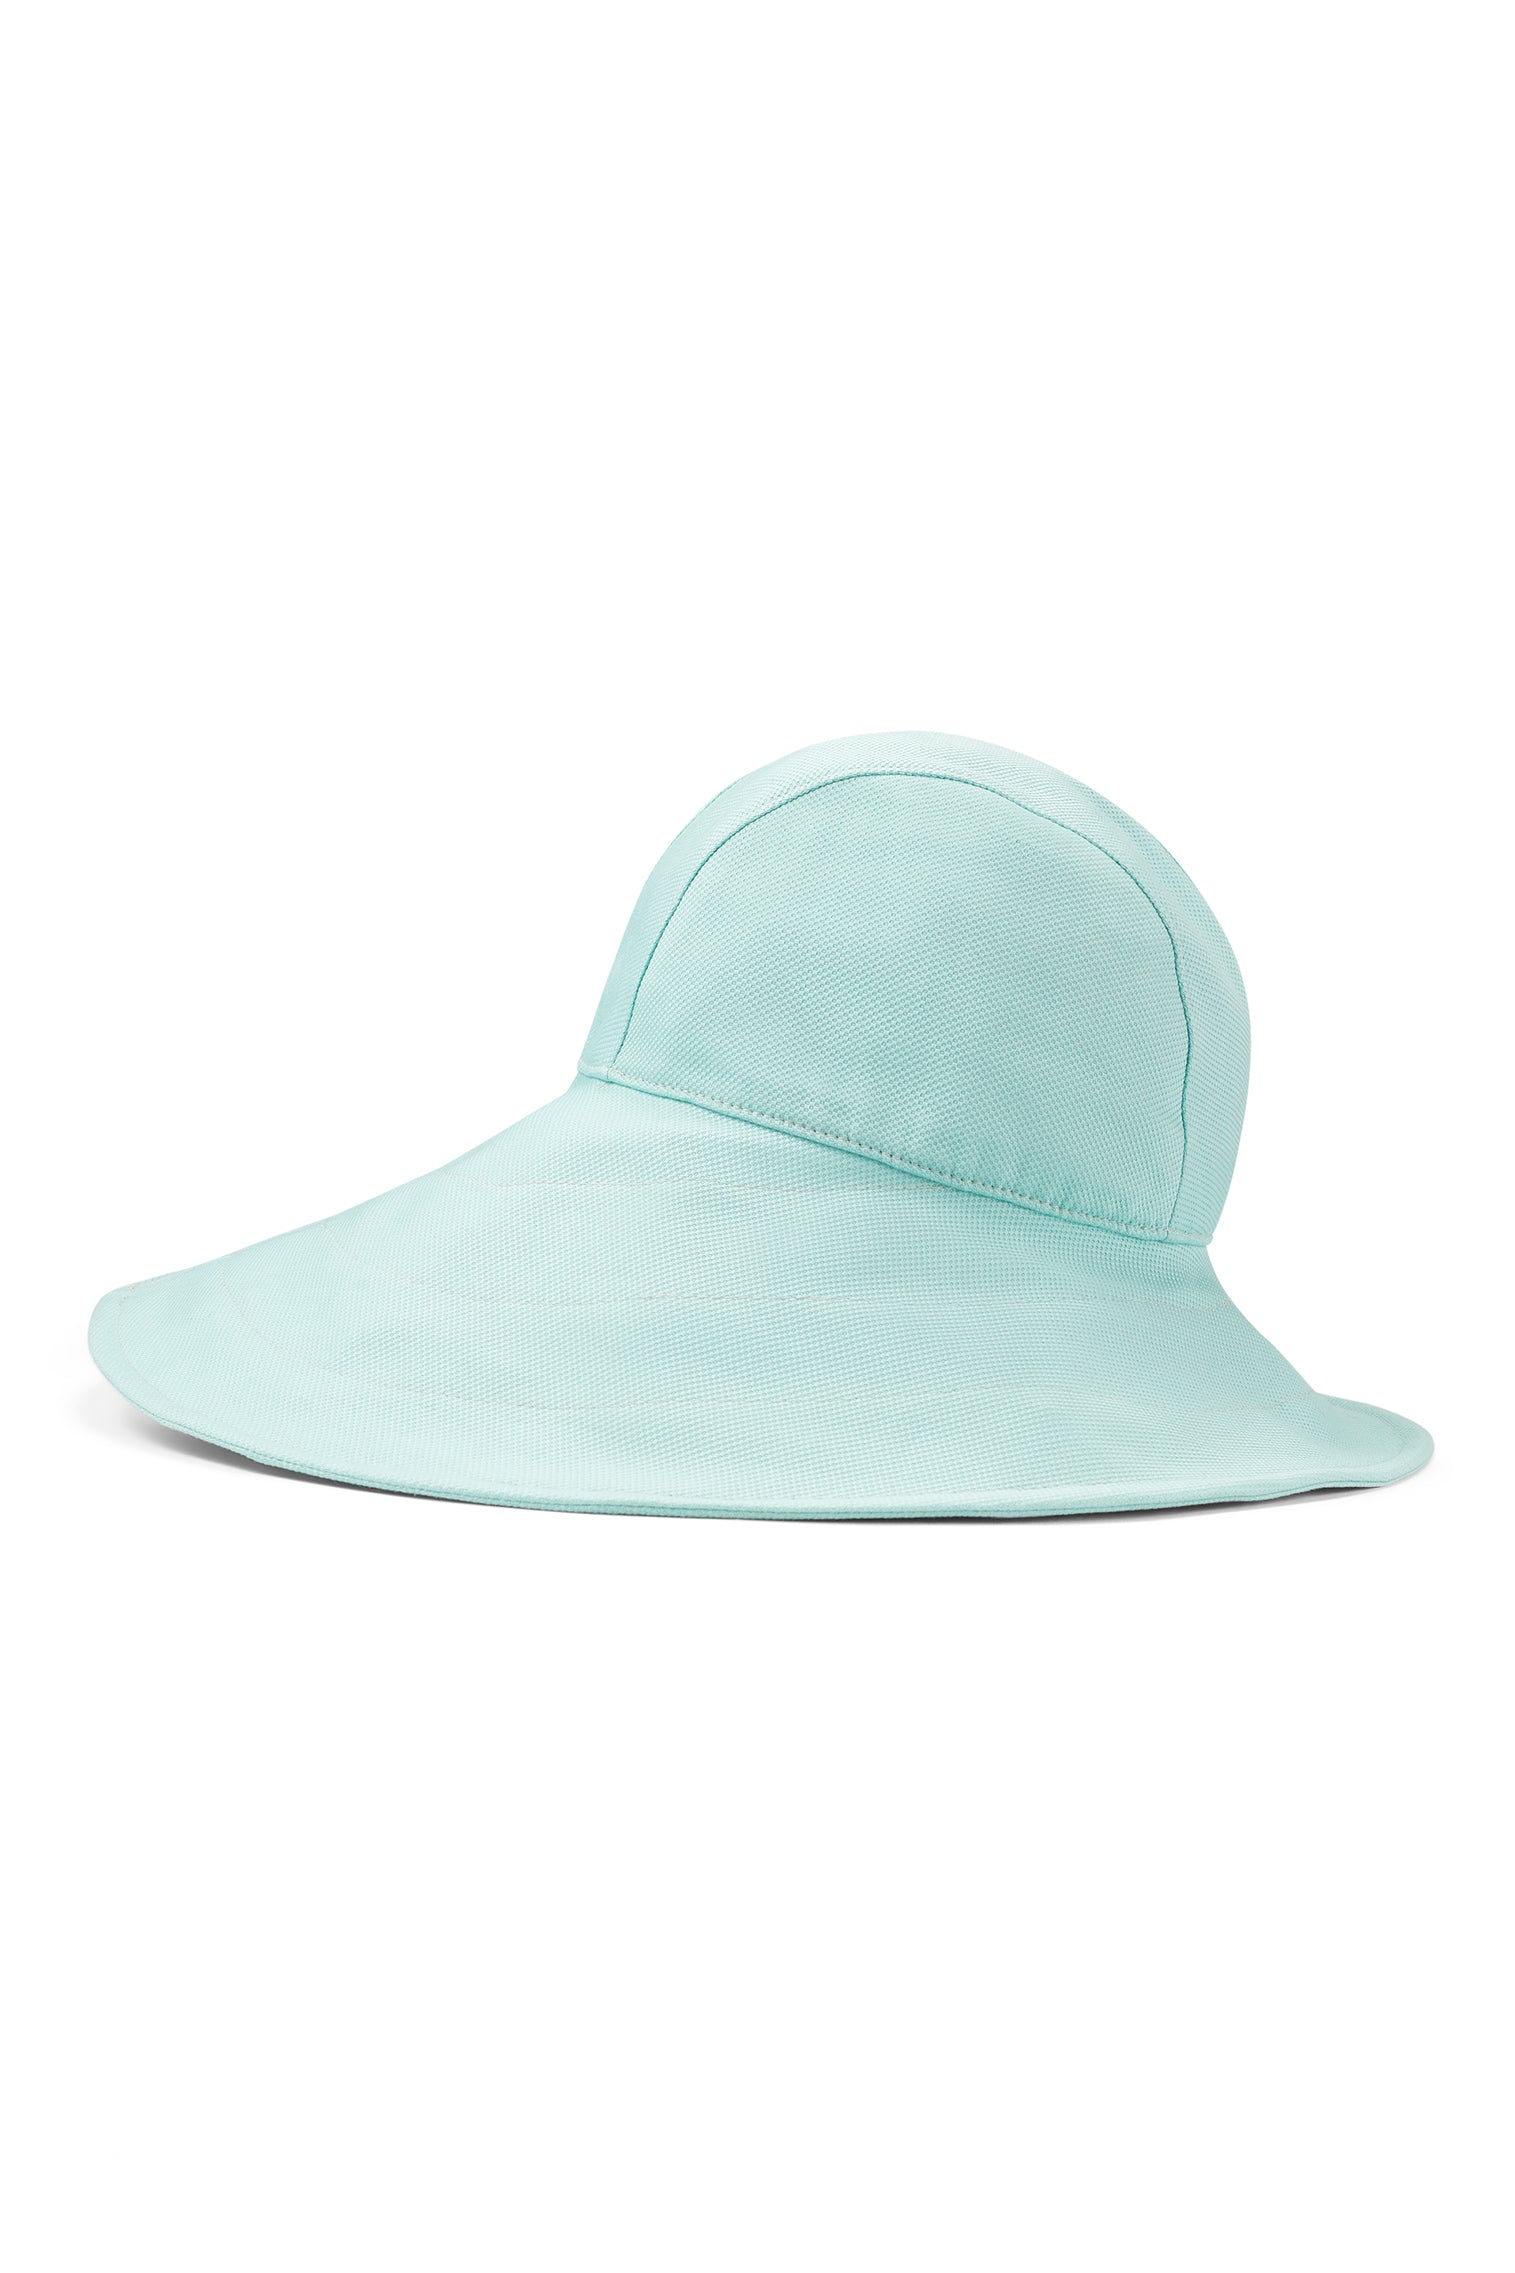 Elowyn Sou'Wester Sun Hat - New Season Women's Hats - Lock & Co. Hatters London UK